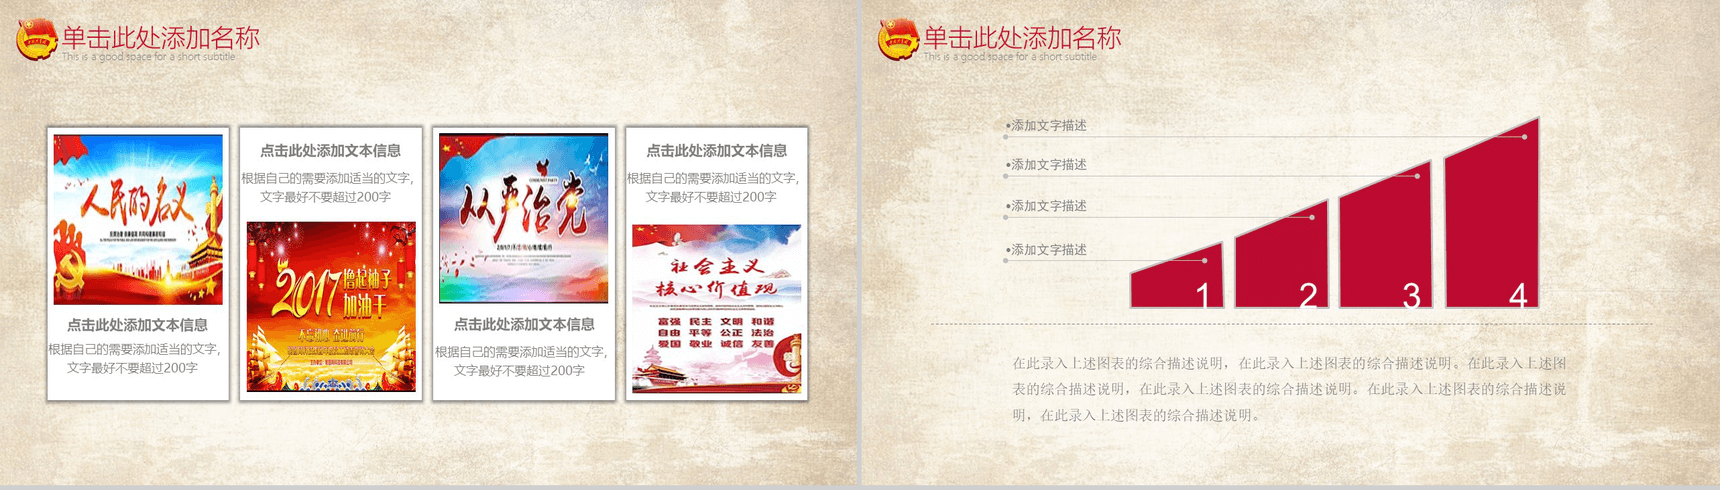 中国共青团一学一做精神教学党政PPT模板-3